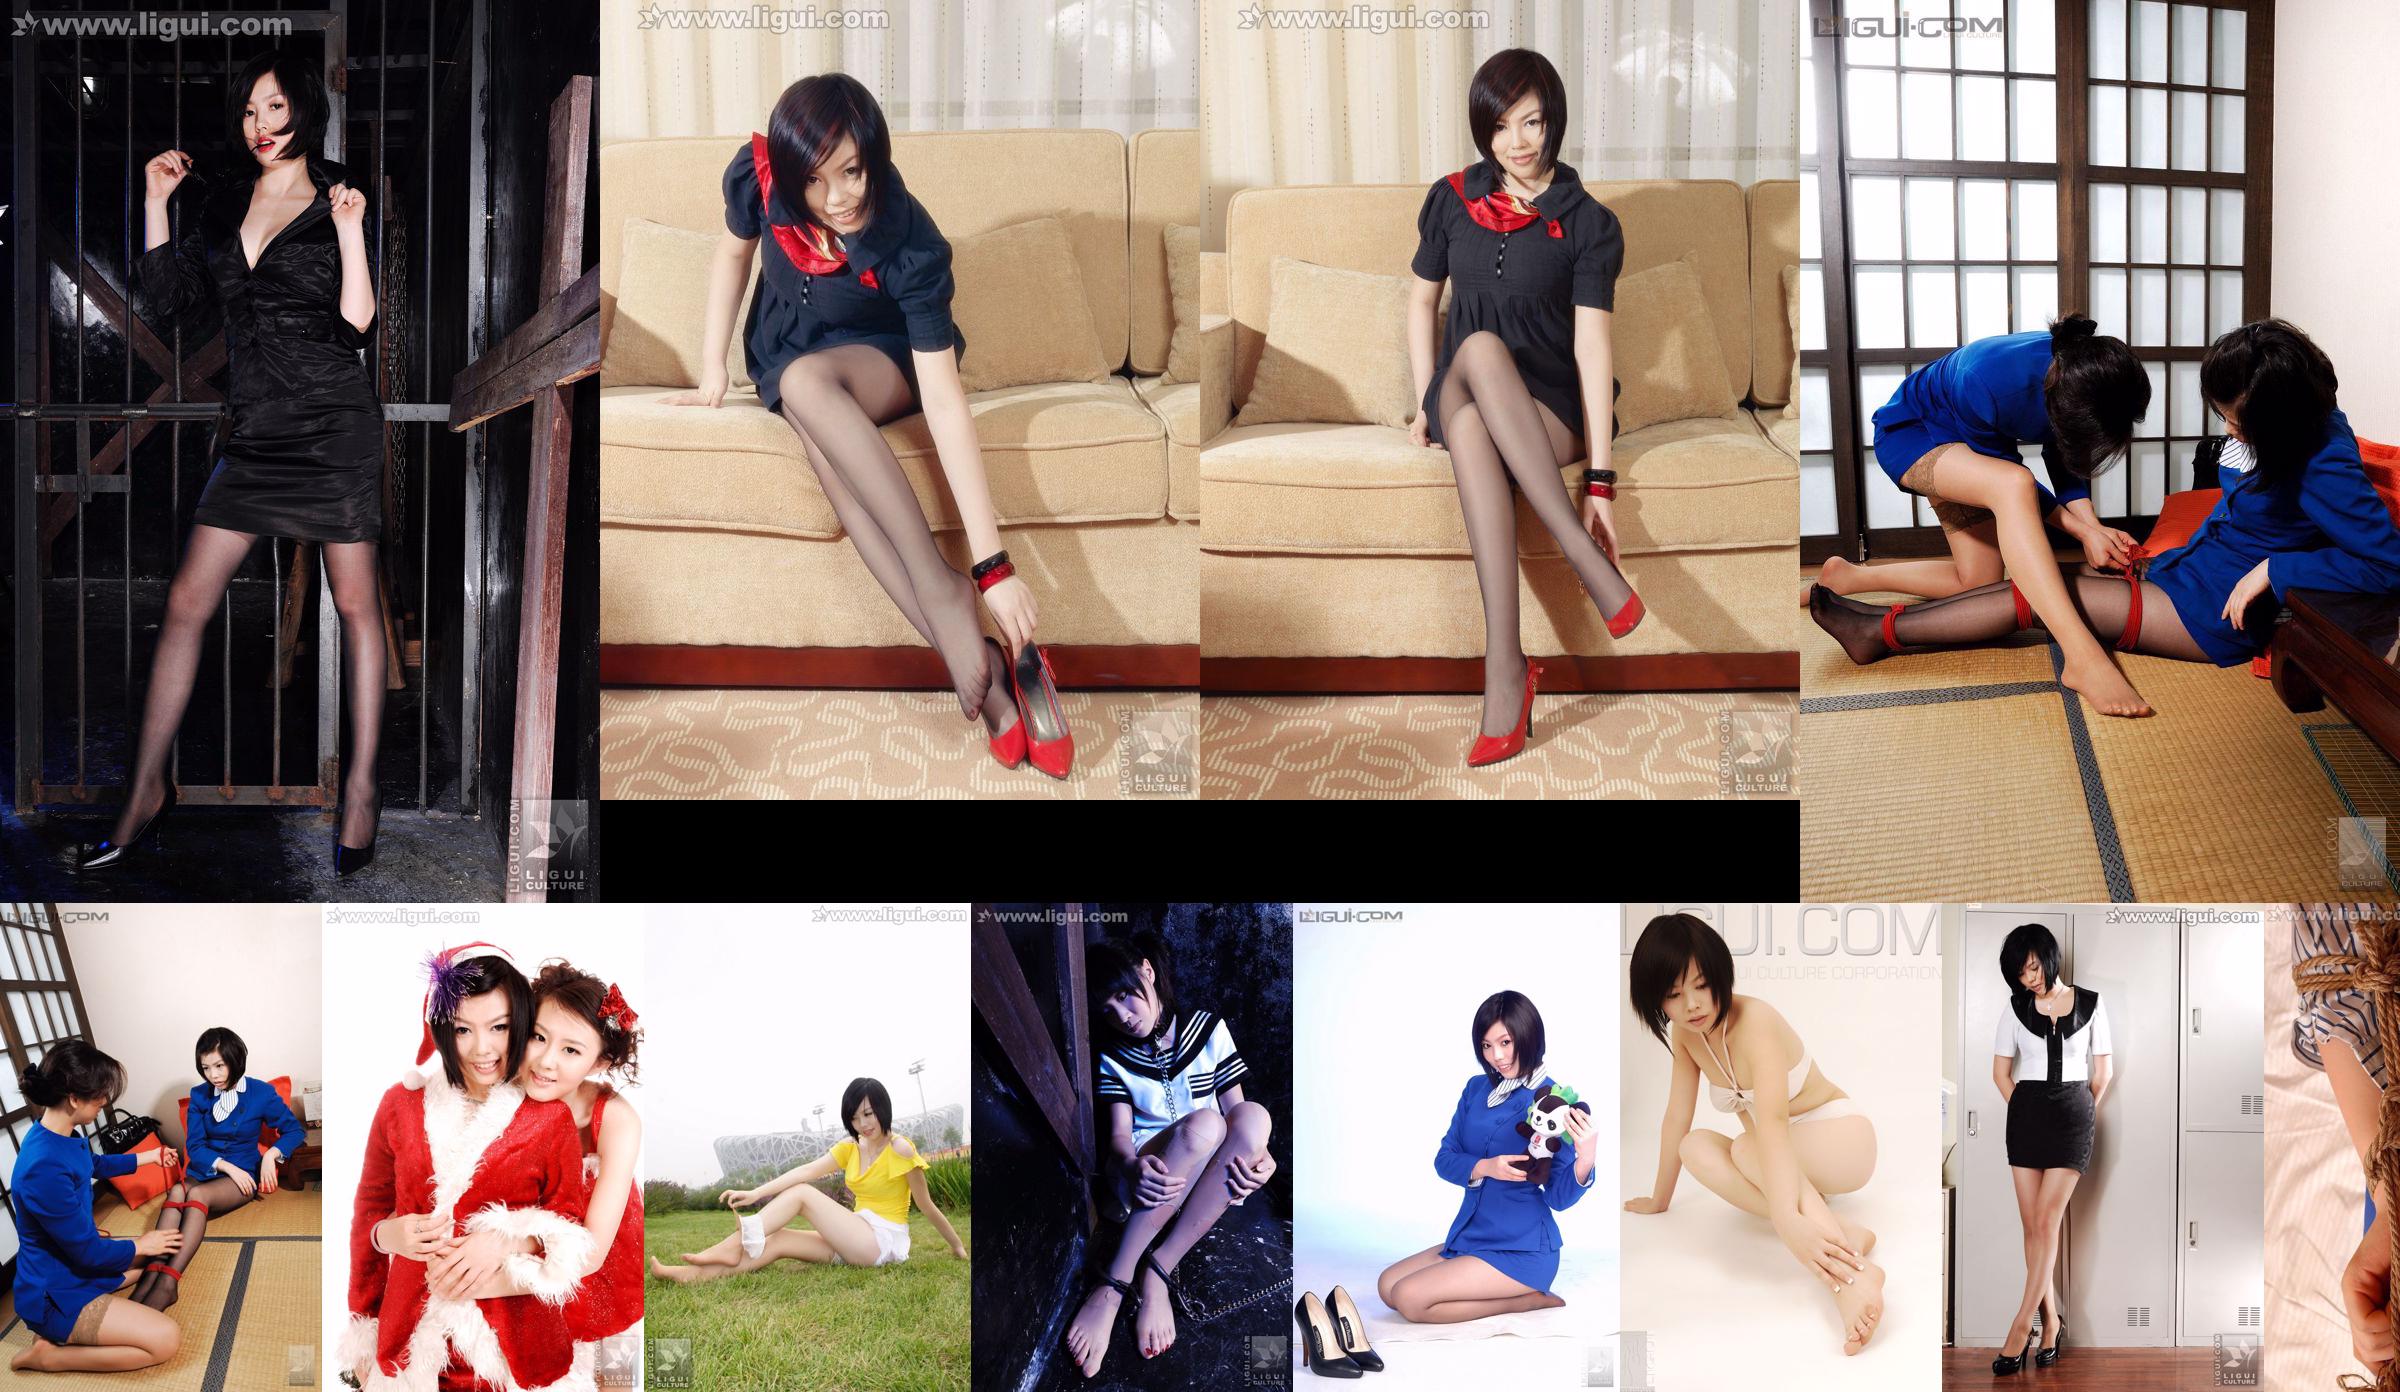 Người mẫu Muzi và Yumi "Nghệ thuật buộc dây đồng phục" [Ligui Meishu LiGui] Hình ảnh về bàn chân lụa No.4d9c46 Trang 1